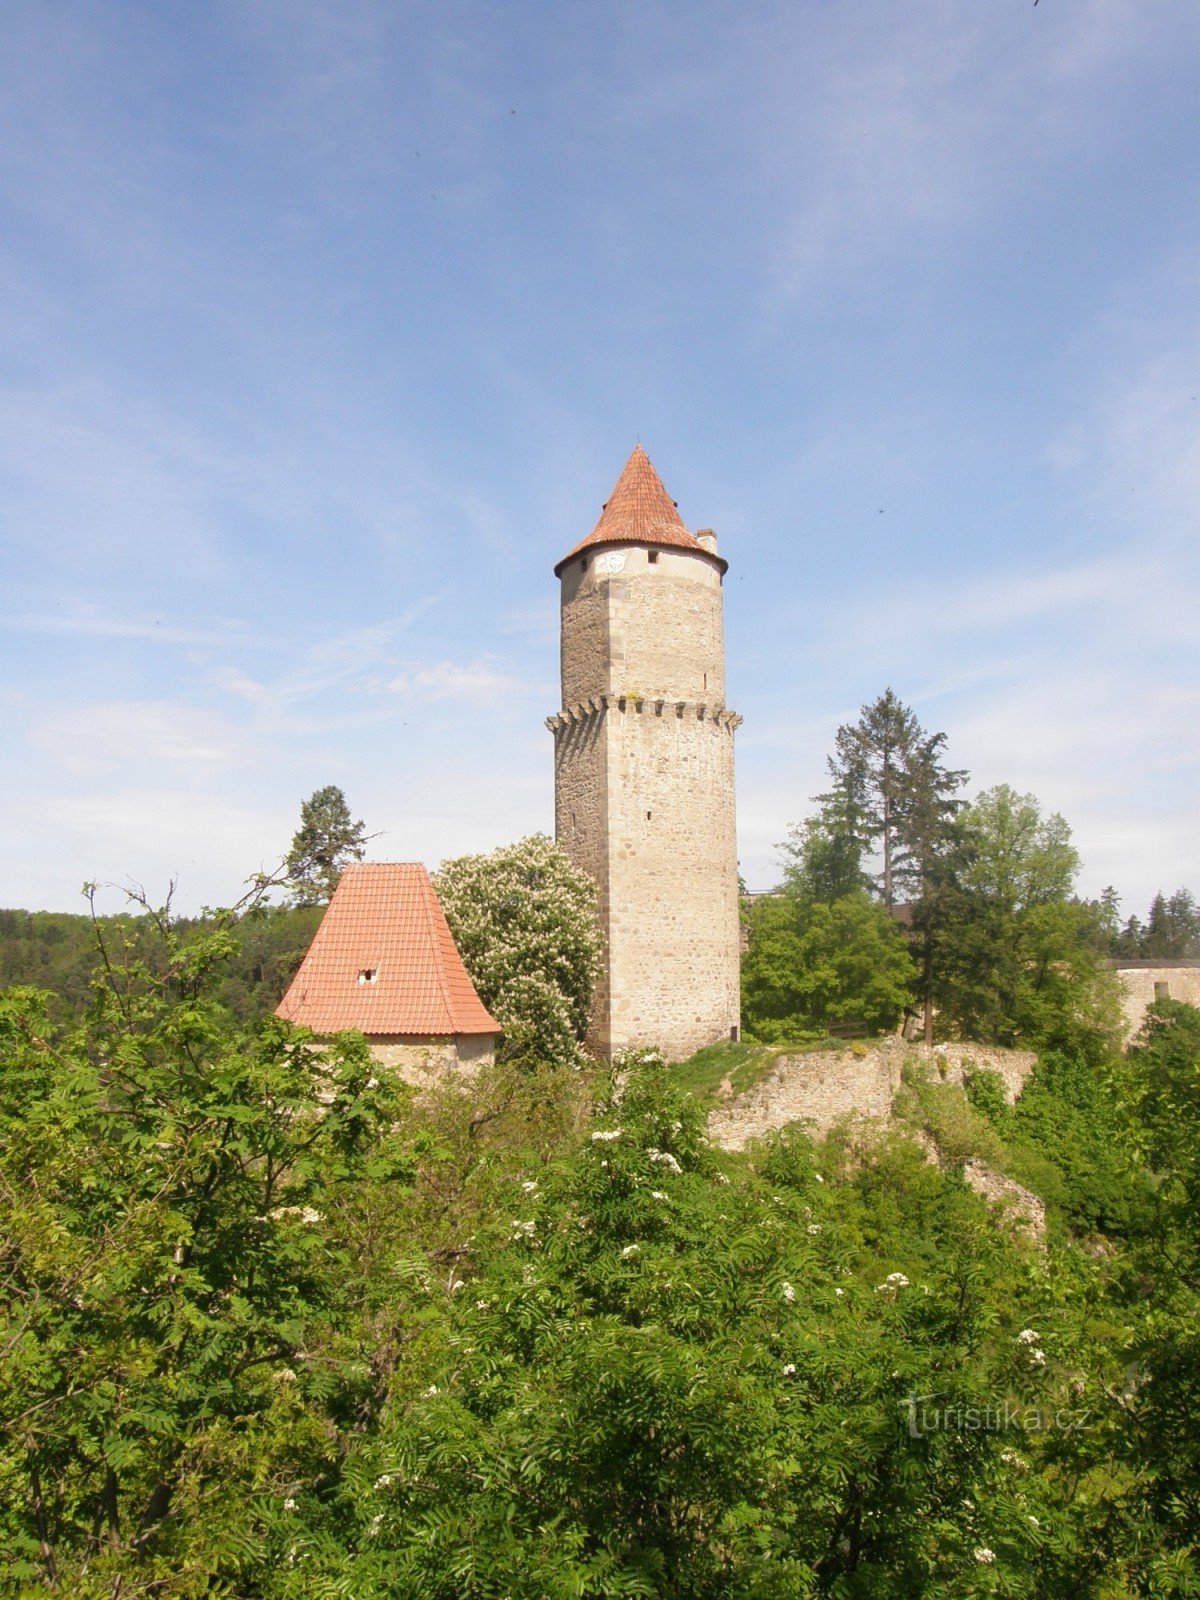 Písecká Gate 和 Hláska Tower 密不可分